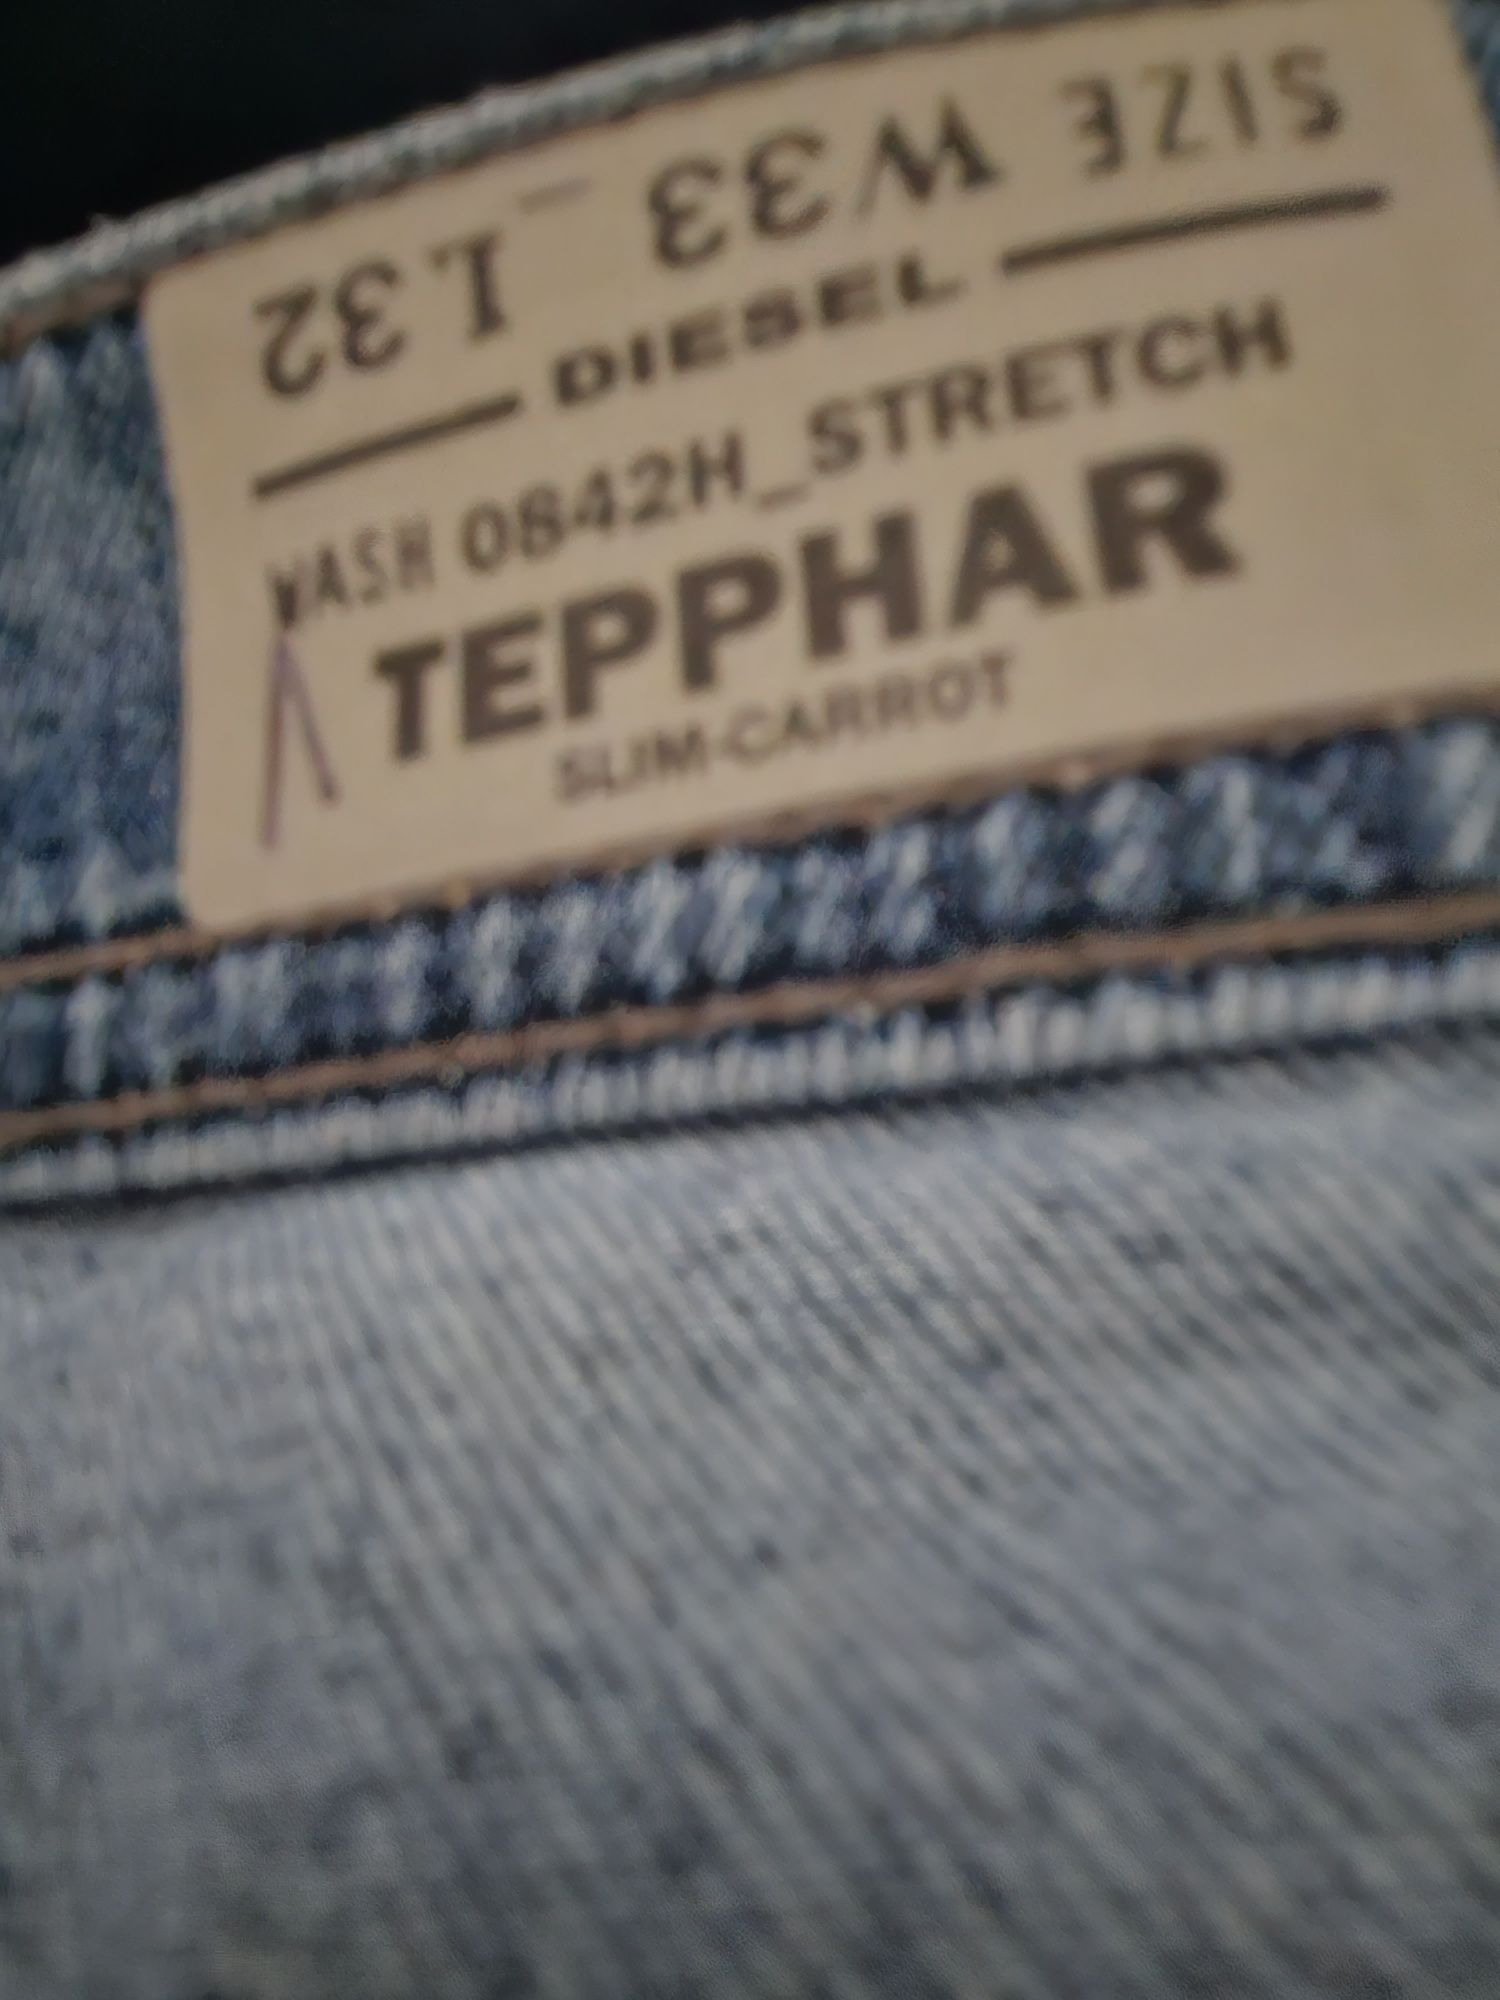 Мужские новые джинсы Diesel w33 l32 Tepphar